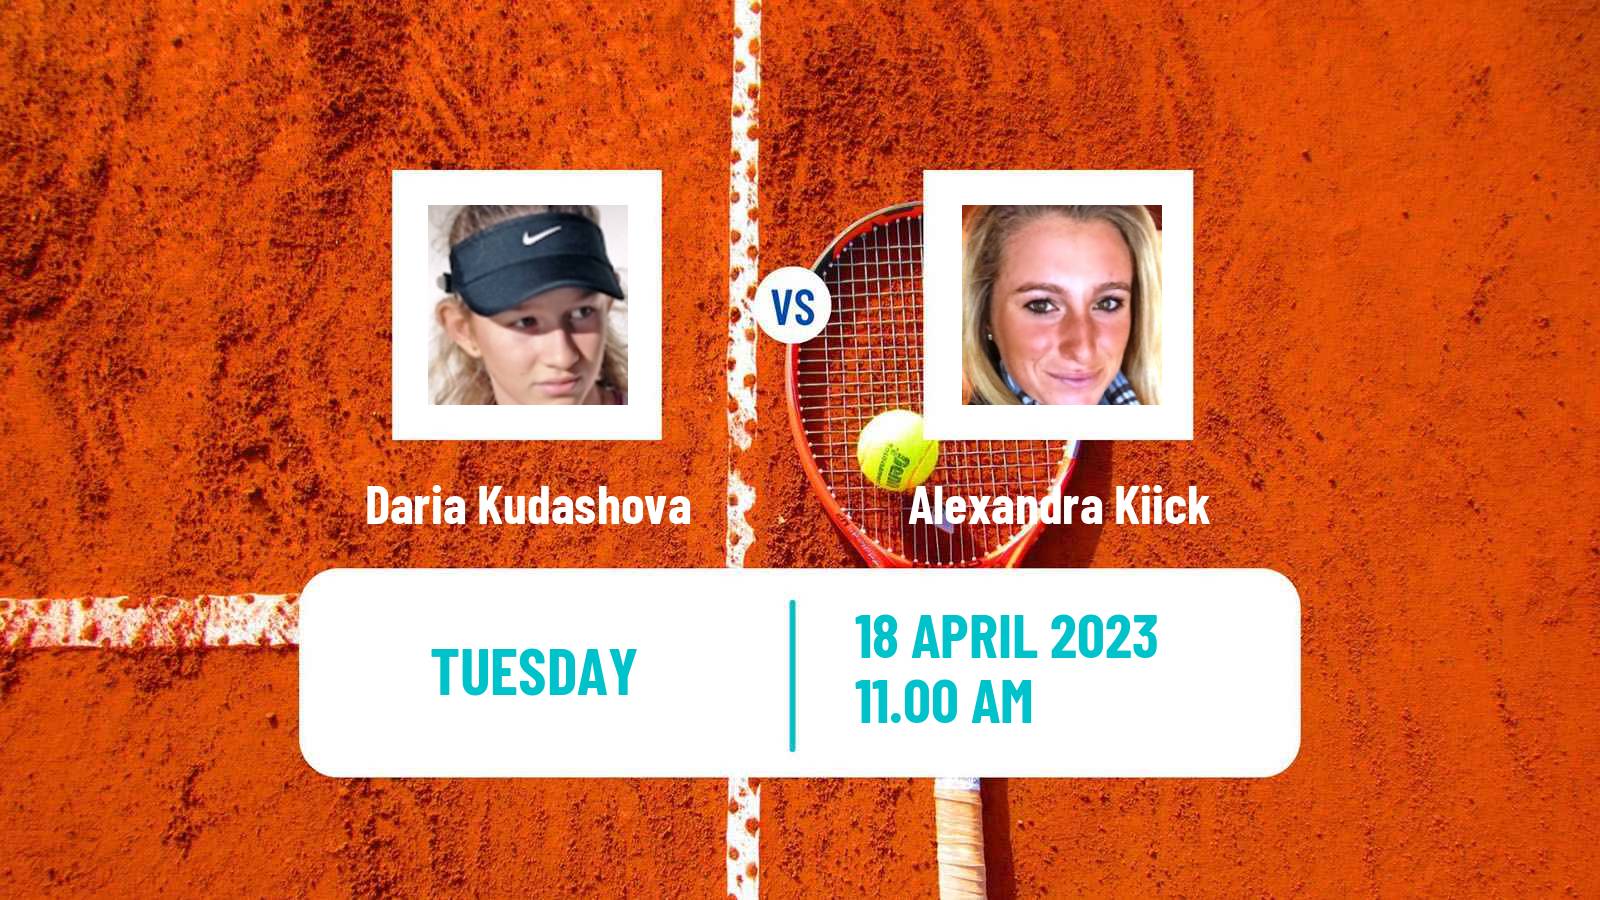 Tennis ITF Tournaments Daria Kudashova - Alexandra Kiick